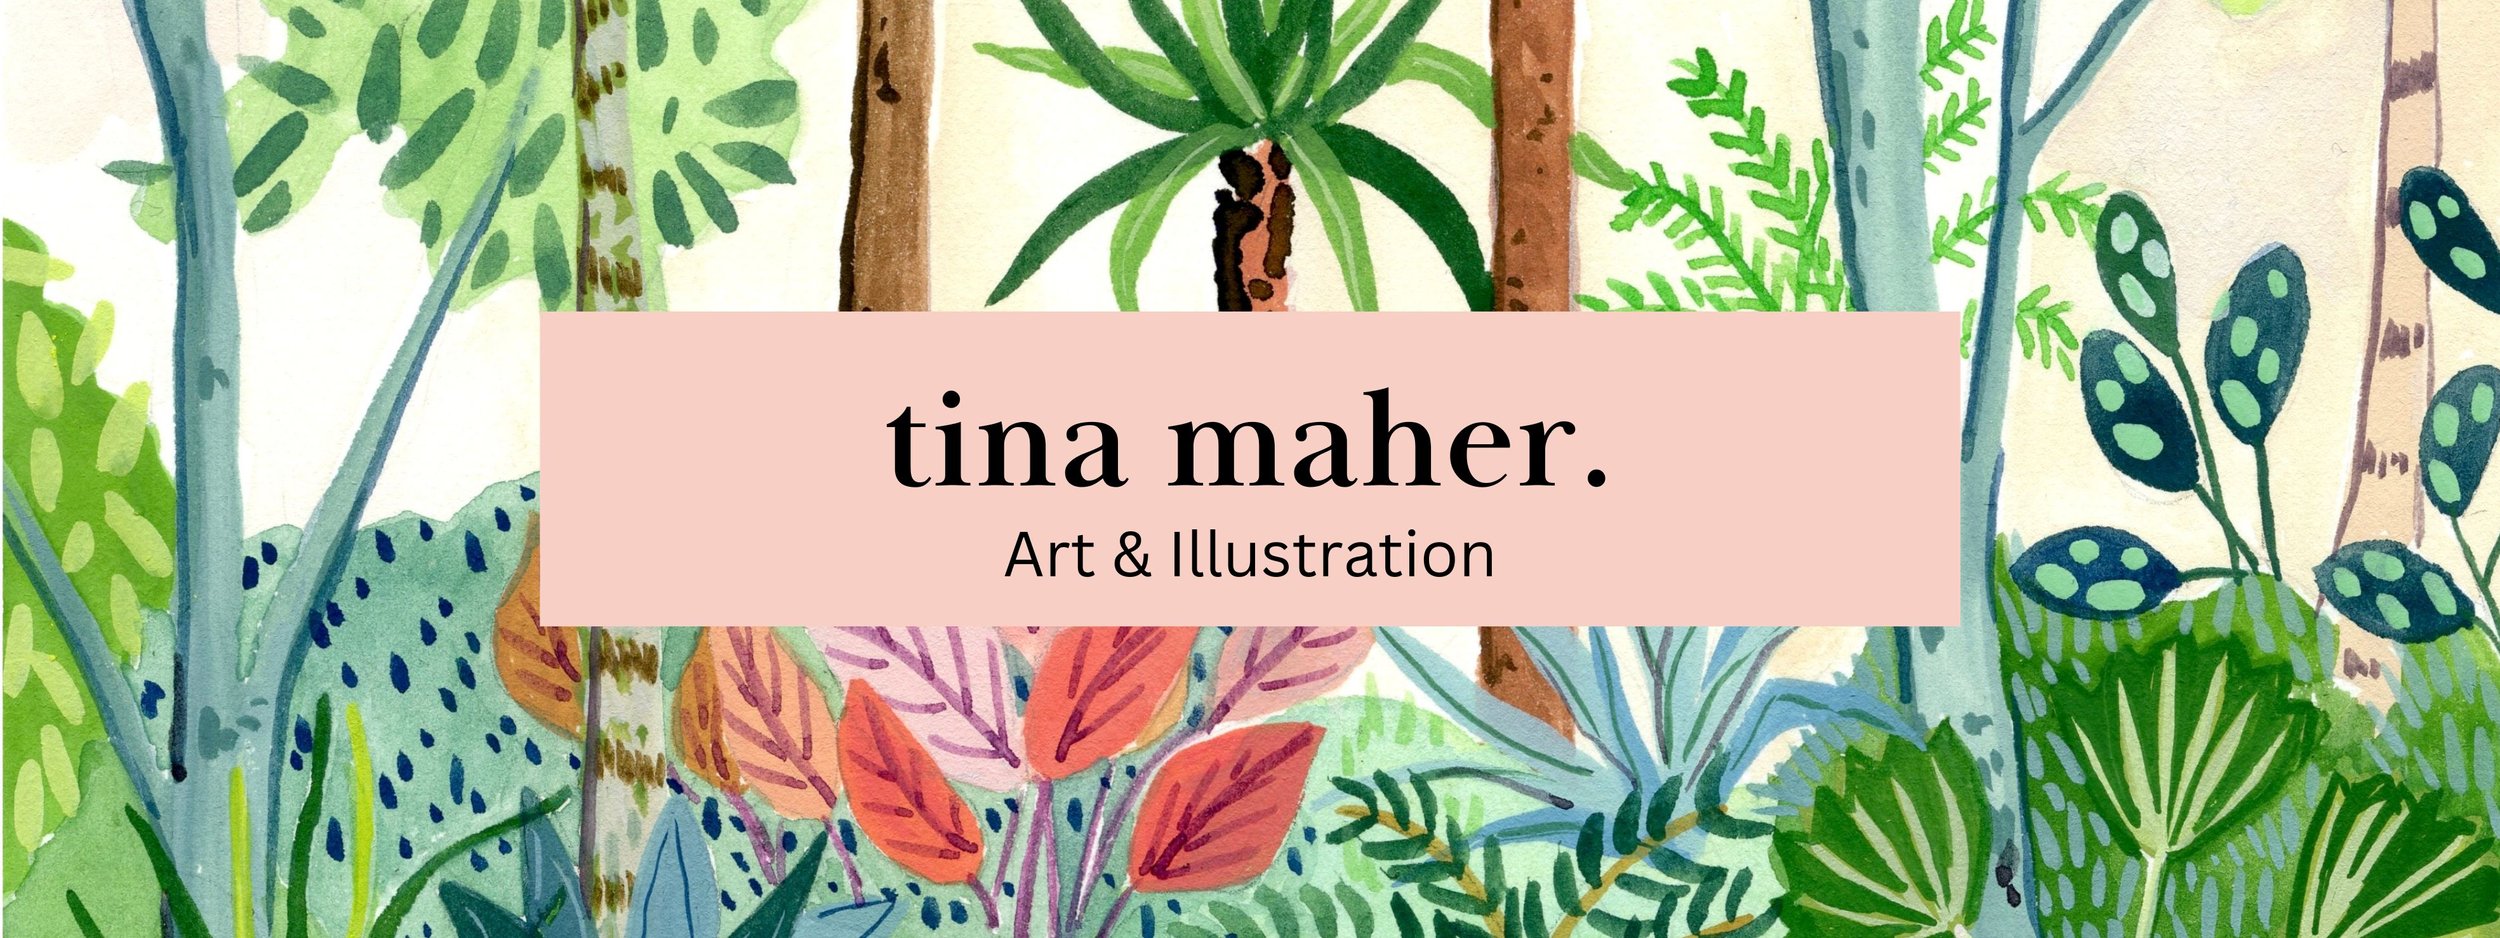 Tina Maher Art